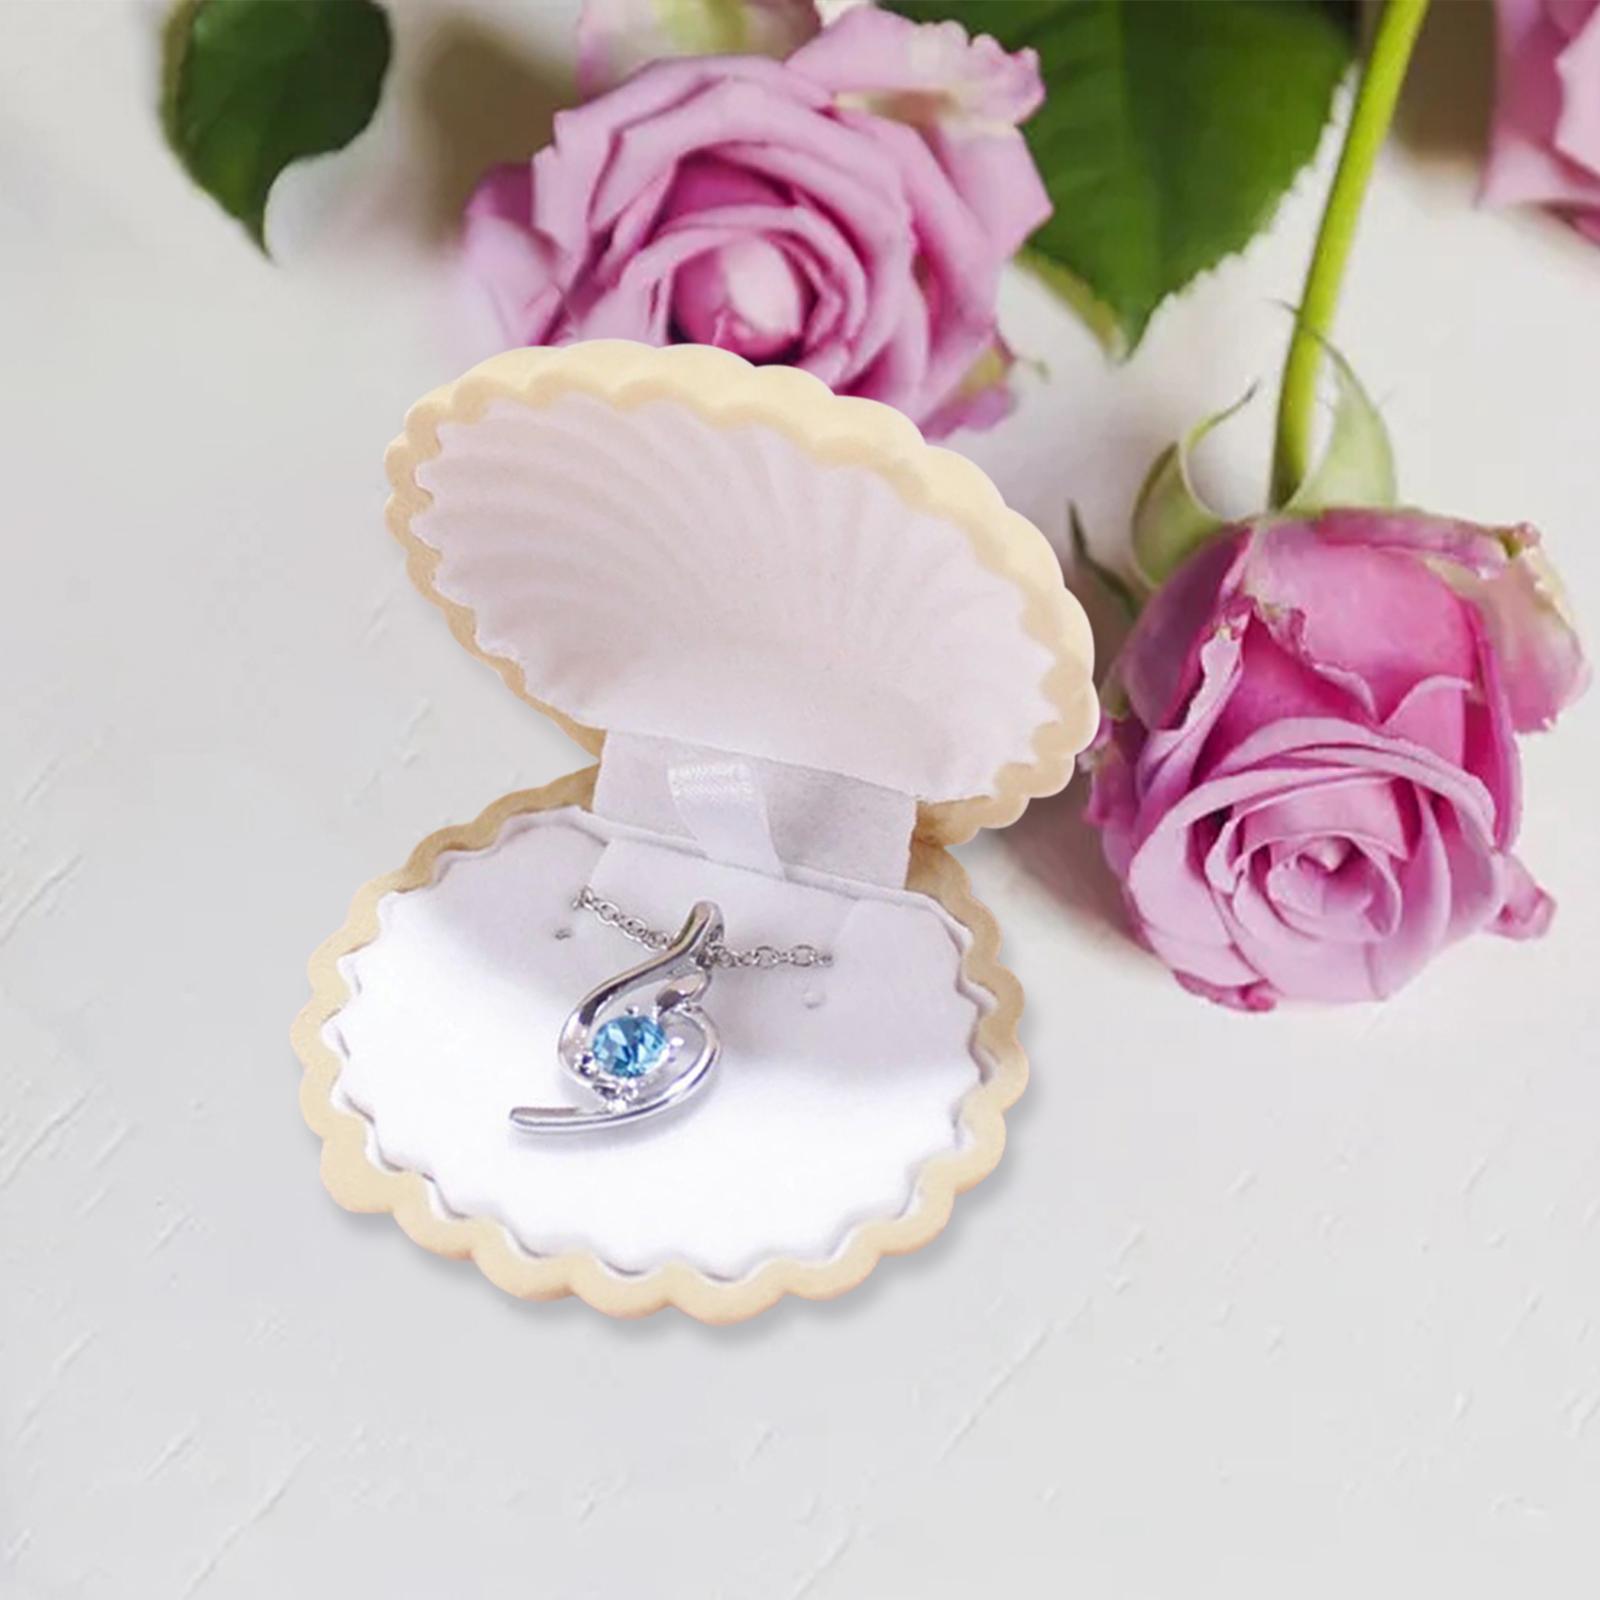 Jewelry Box Decorative Elegant Shell Shape for Wedding Engagement Decoration C